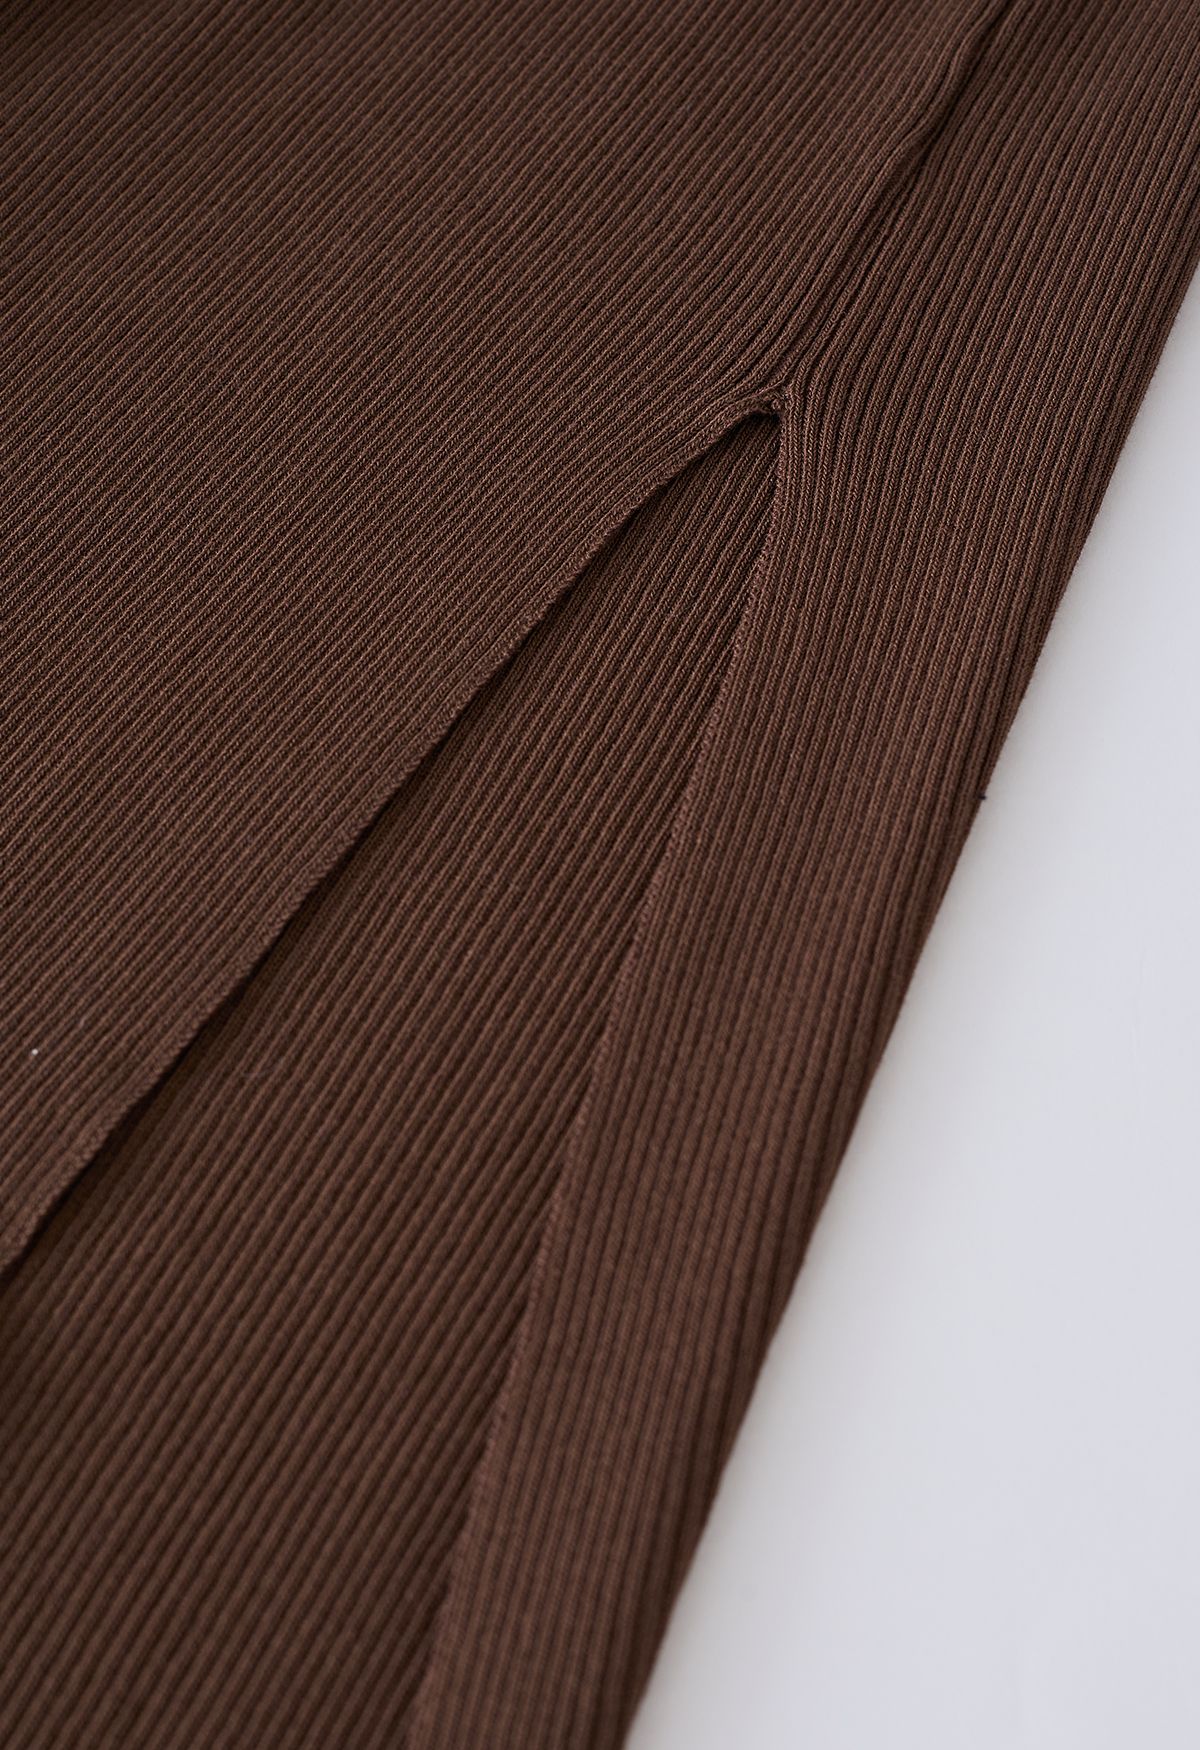 Front Cutout Split Hem Knit Dress in Brown